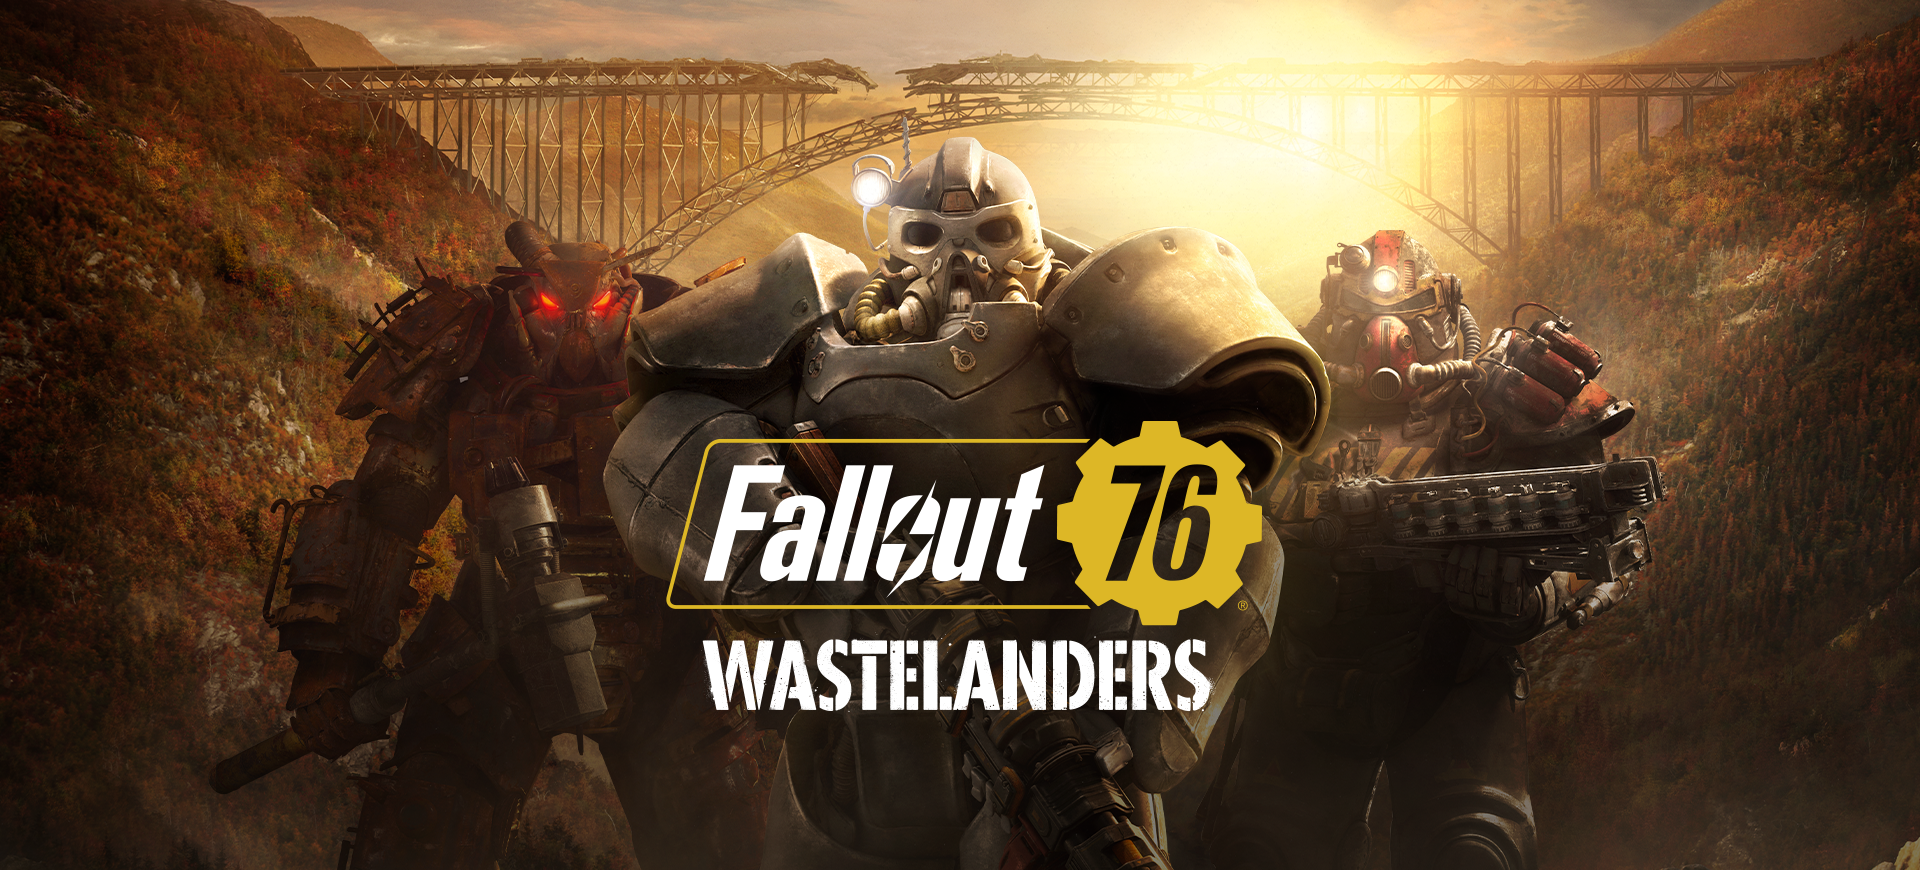 В Fallout 76 будет 4 сезоны: подробности контентных обновлений